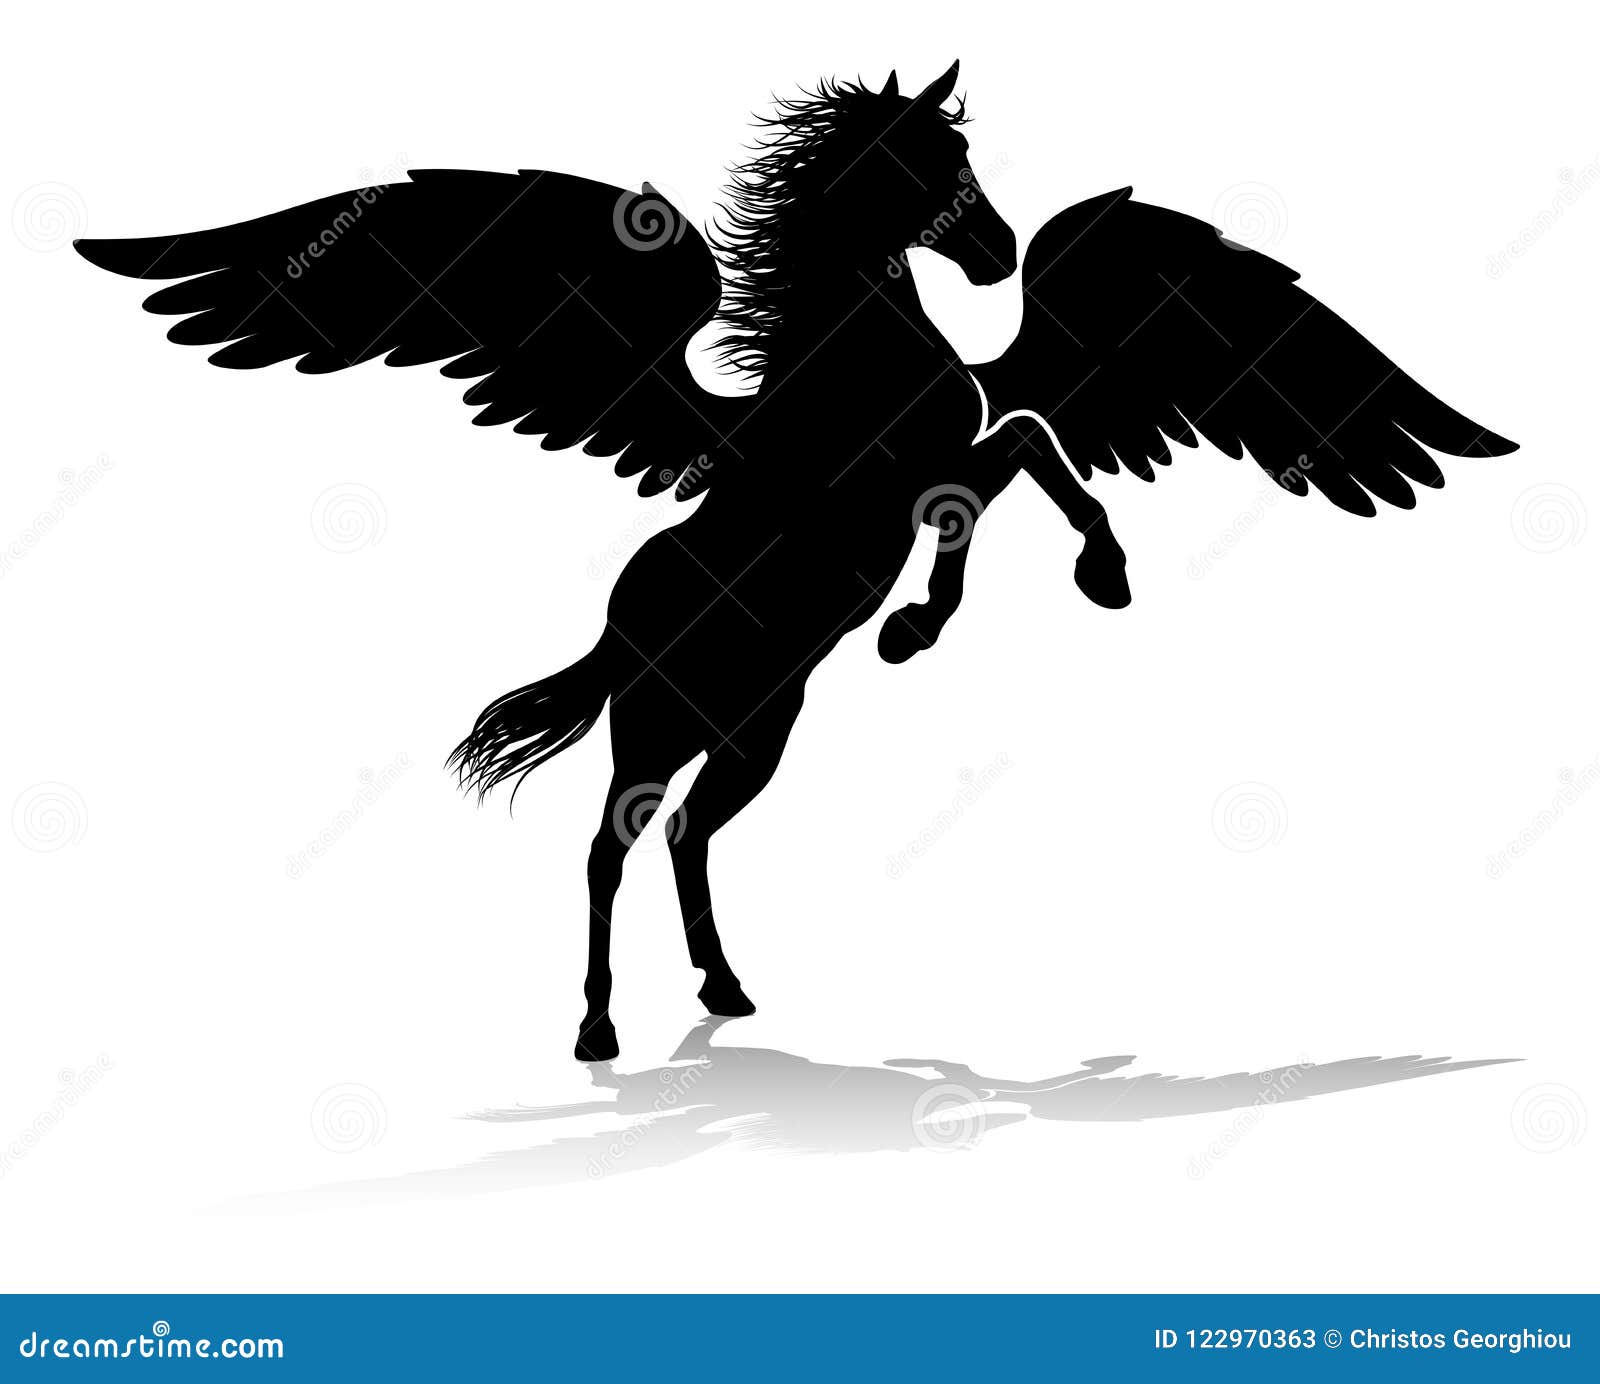 pegasus silhouette mythological winged horse